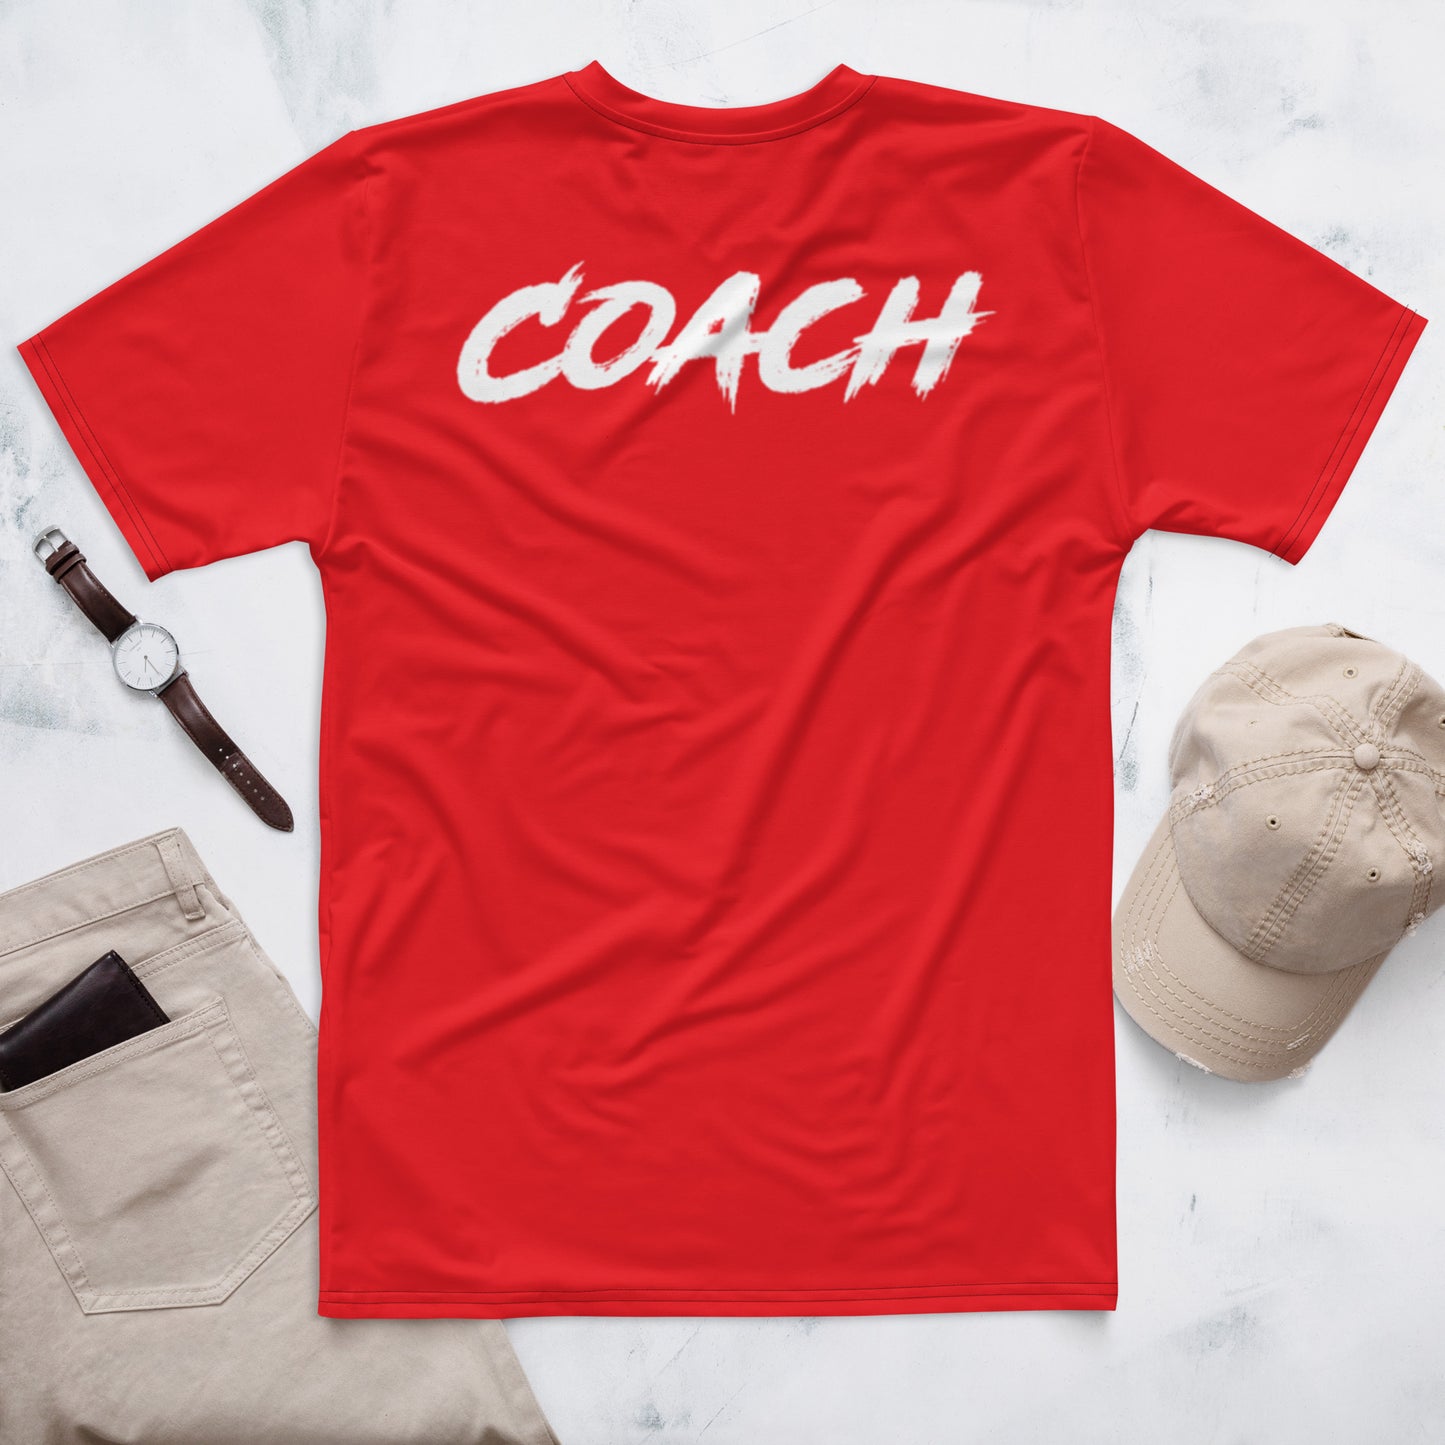 Apex Coach shirt